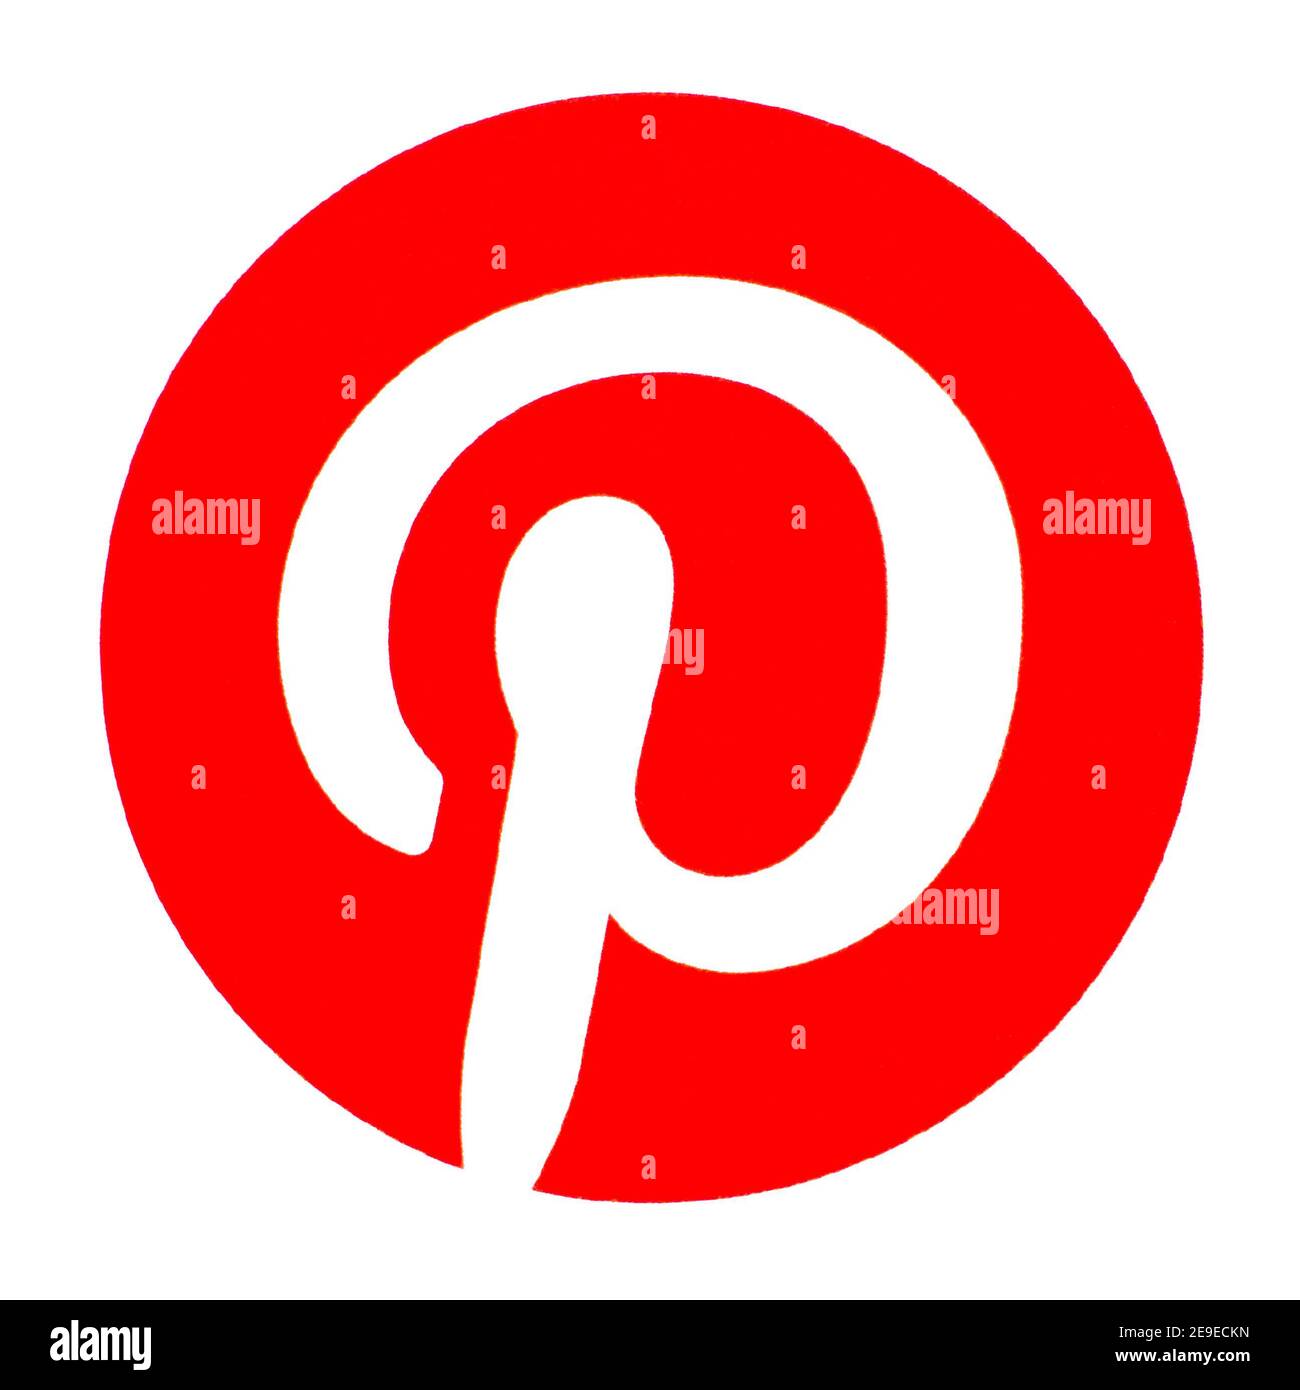 Logotipo de Pinterest impreso en papel. Pinterest es una empresa de aplicaciones web y móviles, que opera un sitio web homónimo para compartir fotos Foto de stock